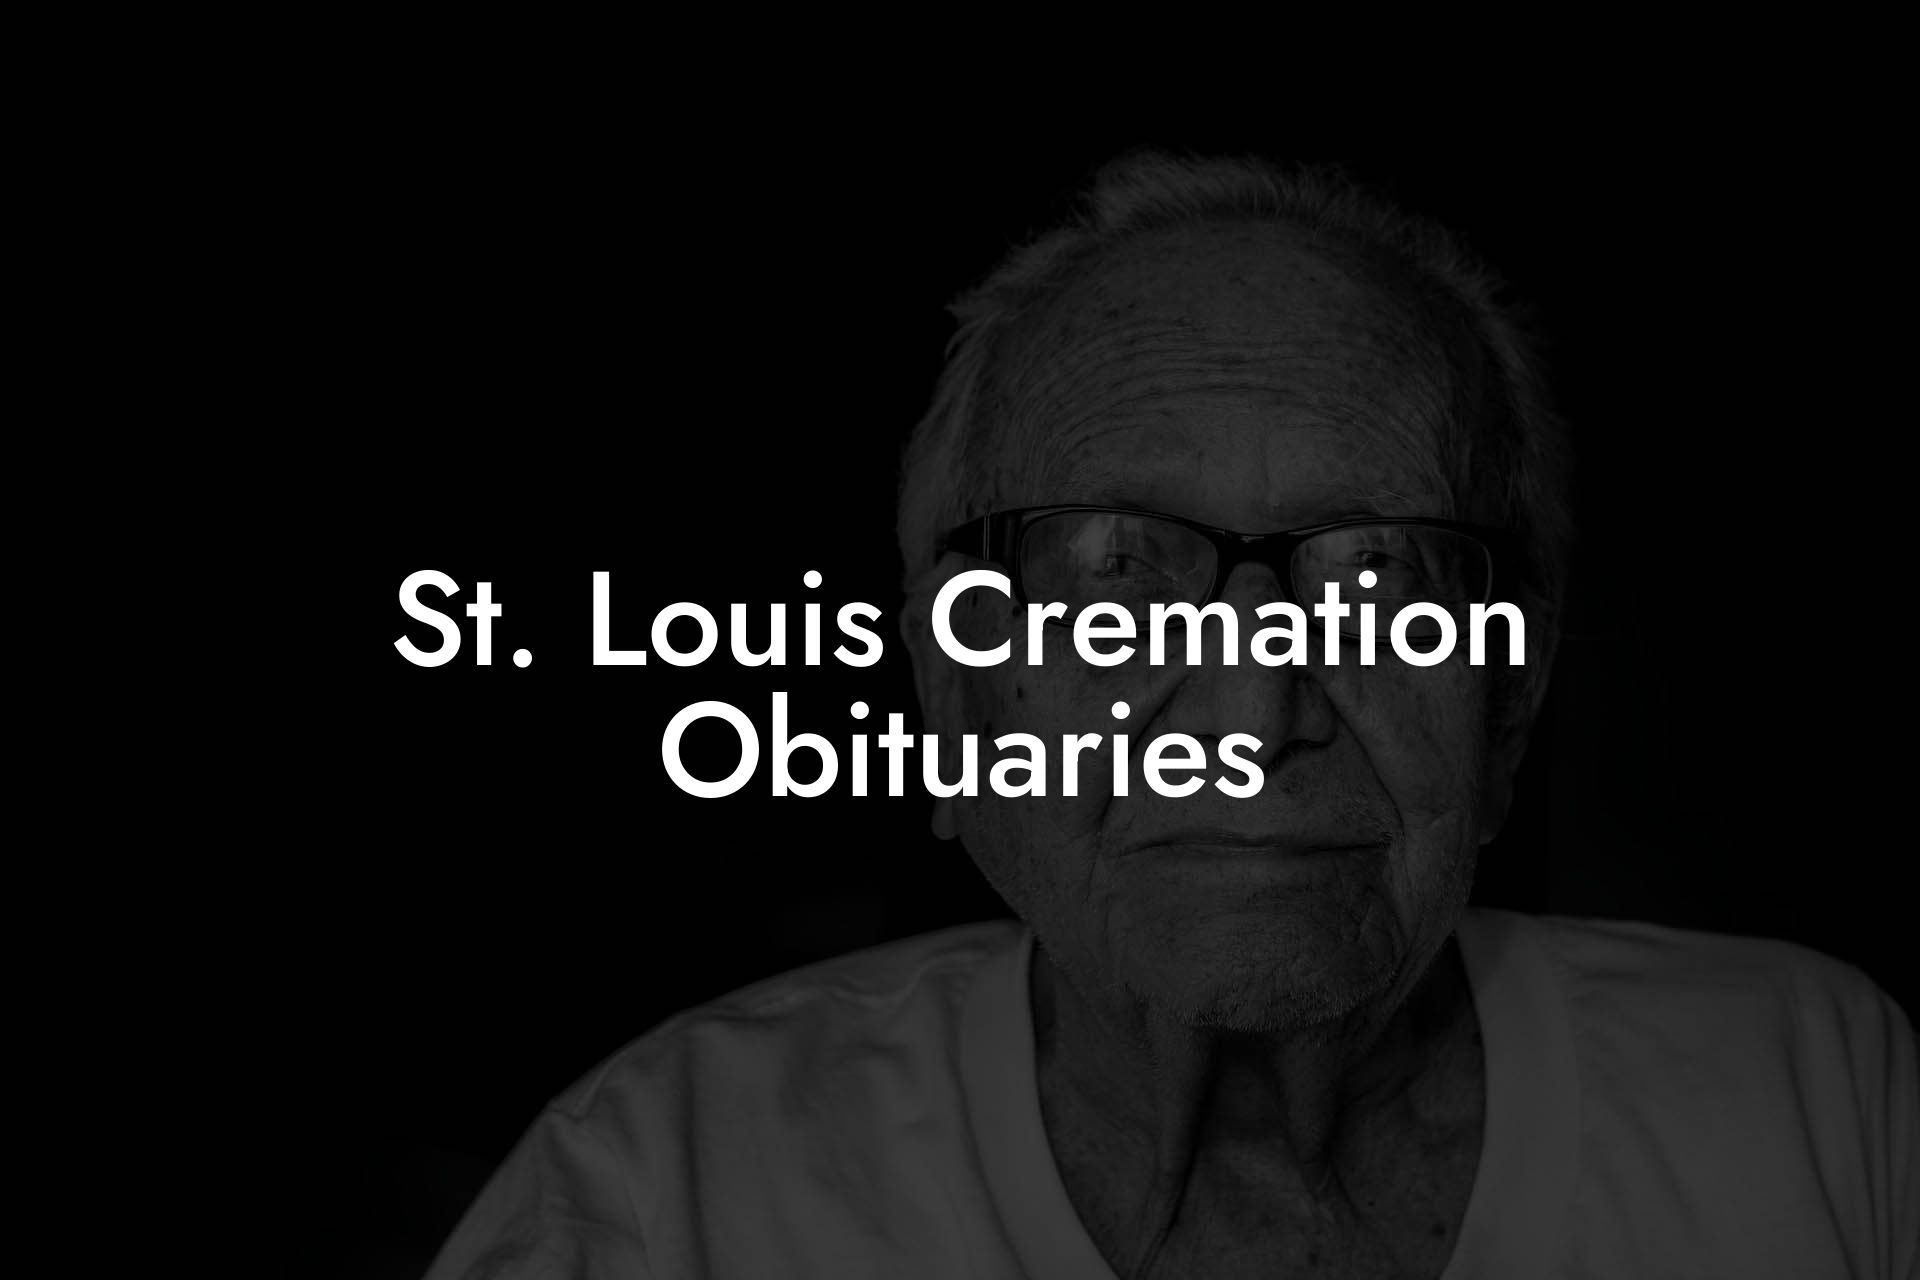 St. Louis Cremation Obituaries